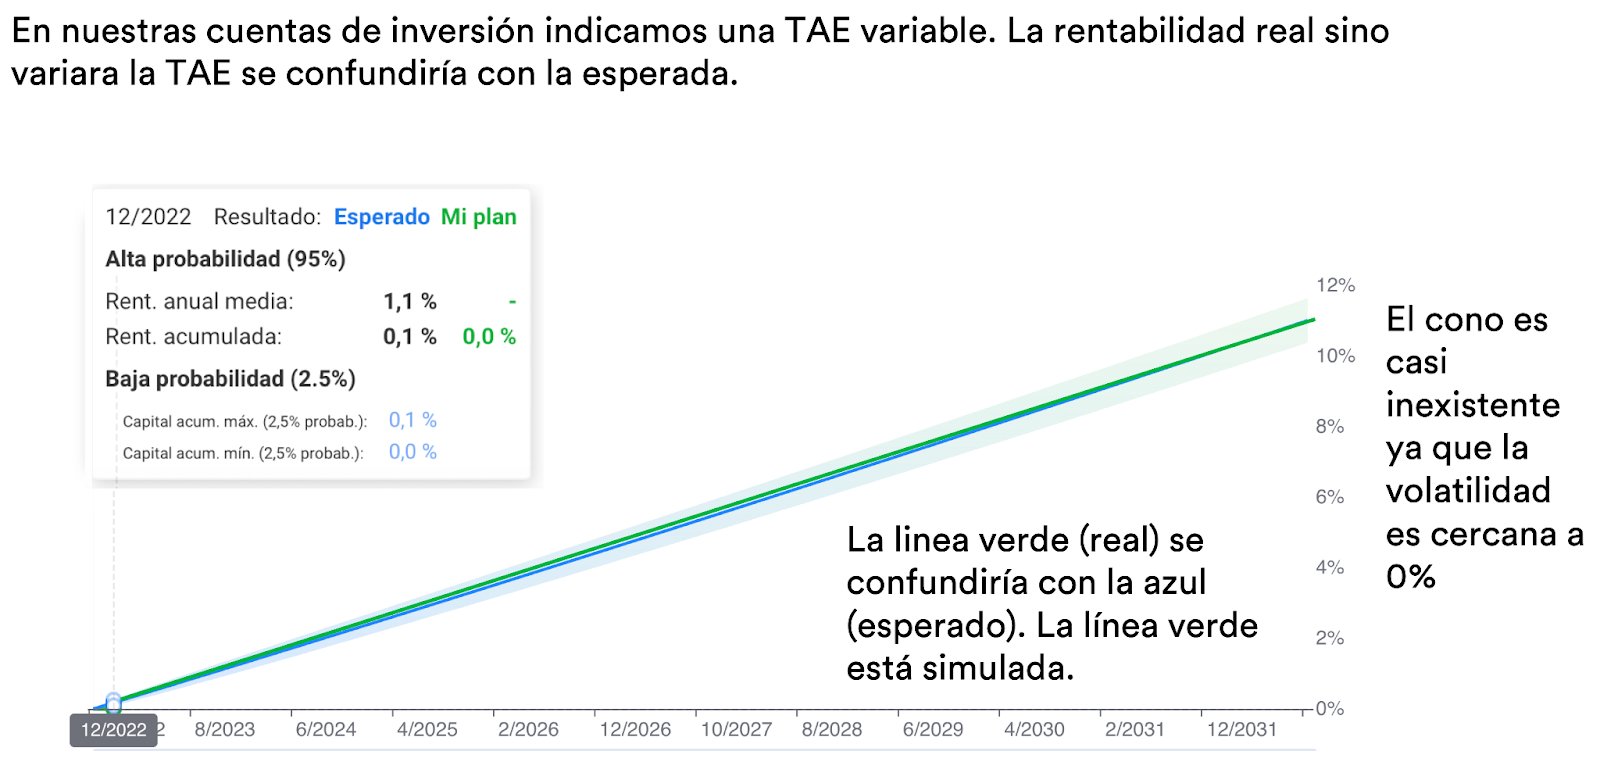 En nuestras cuentas de inversión indicamos una TAE variable. La rentabilidad real sino variara la TAE se confundiría con la esperada.